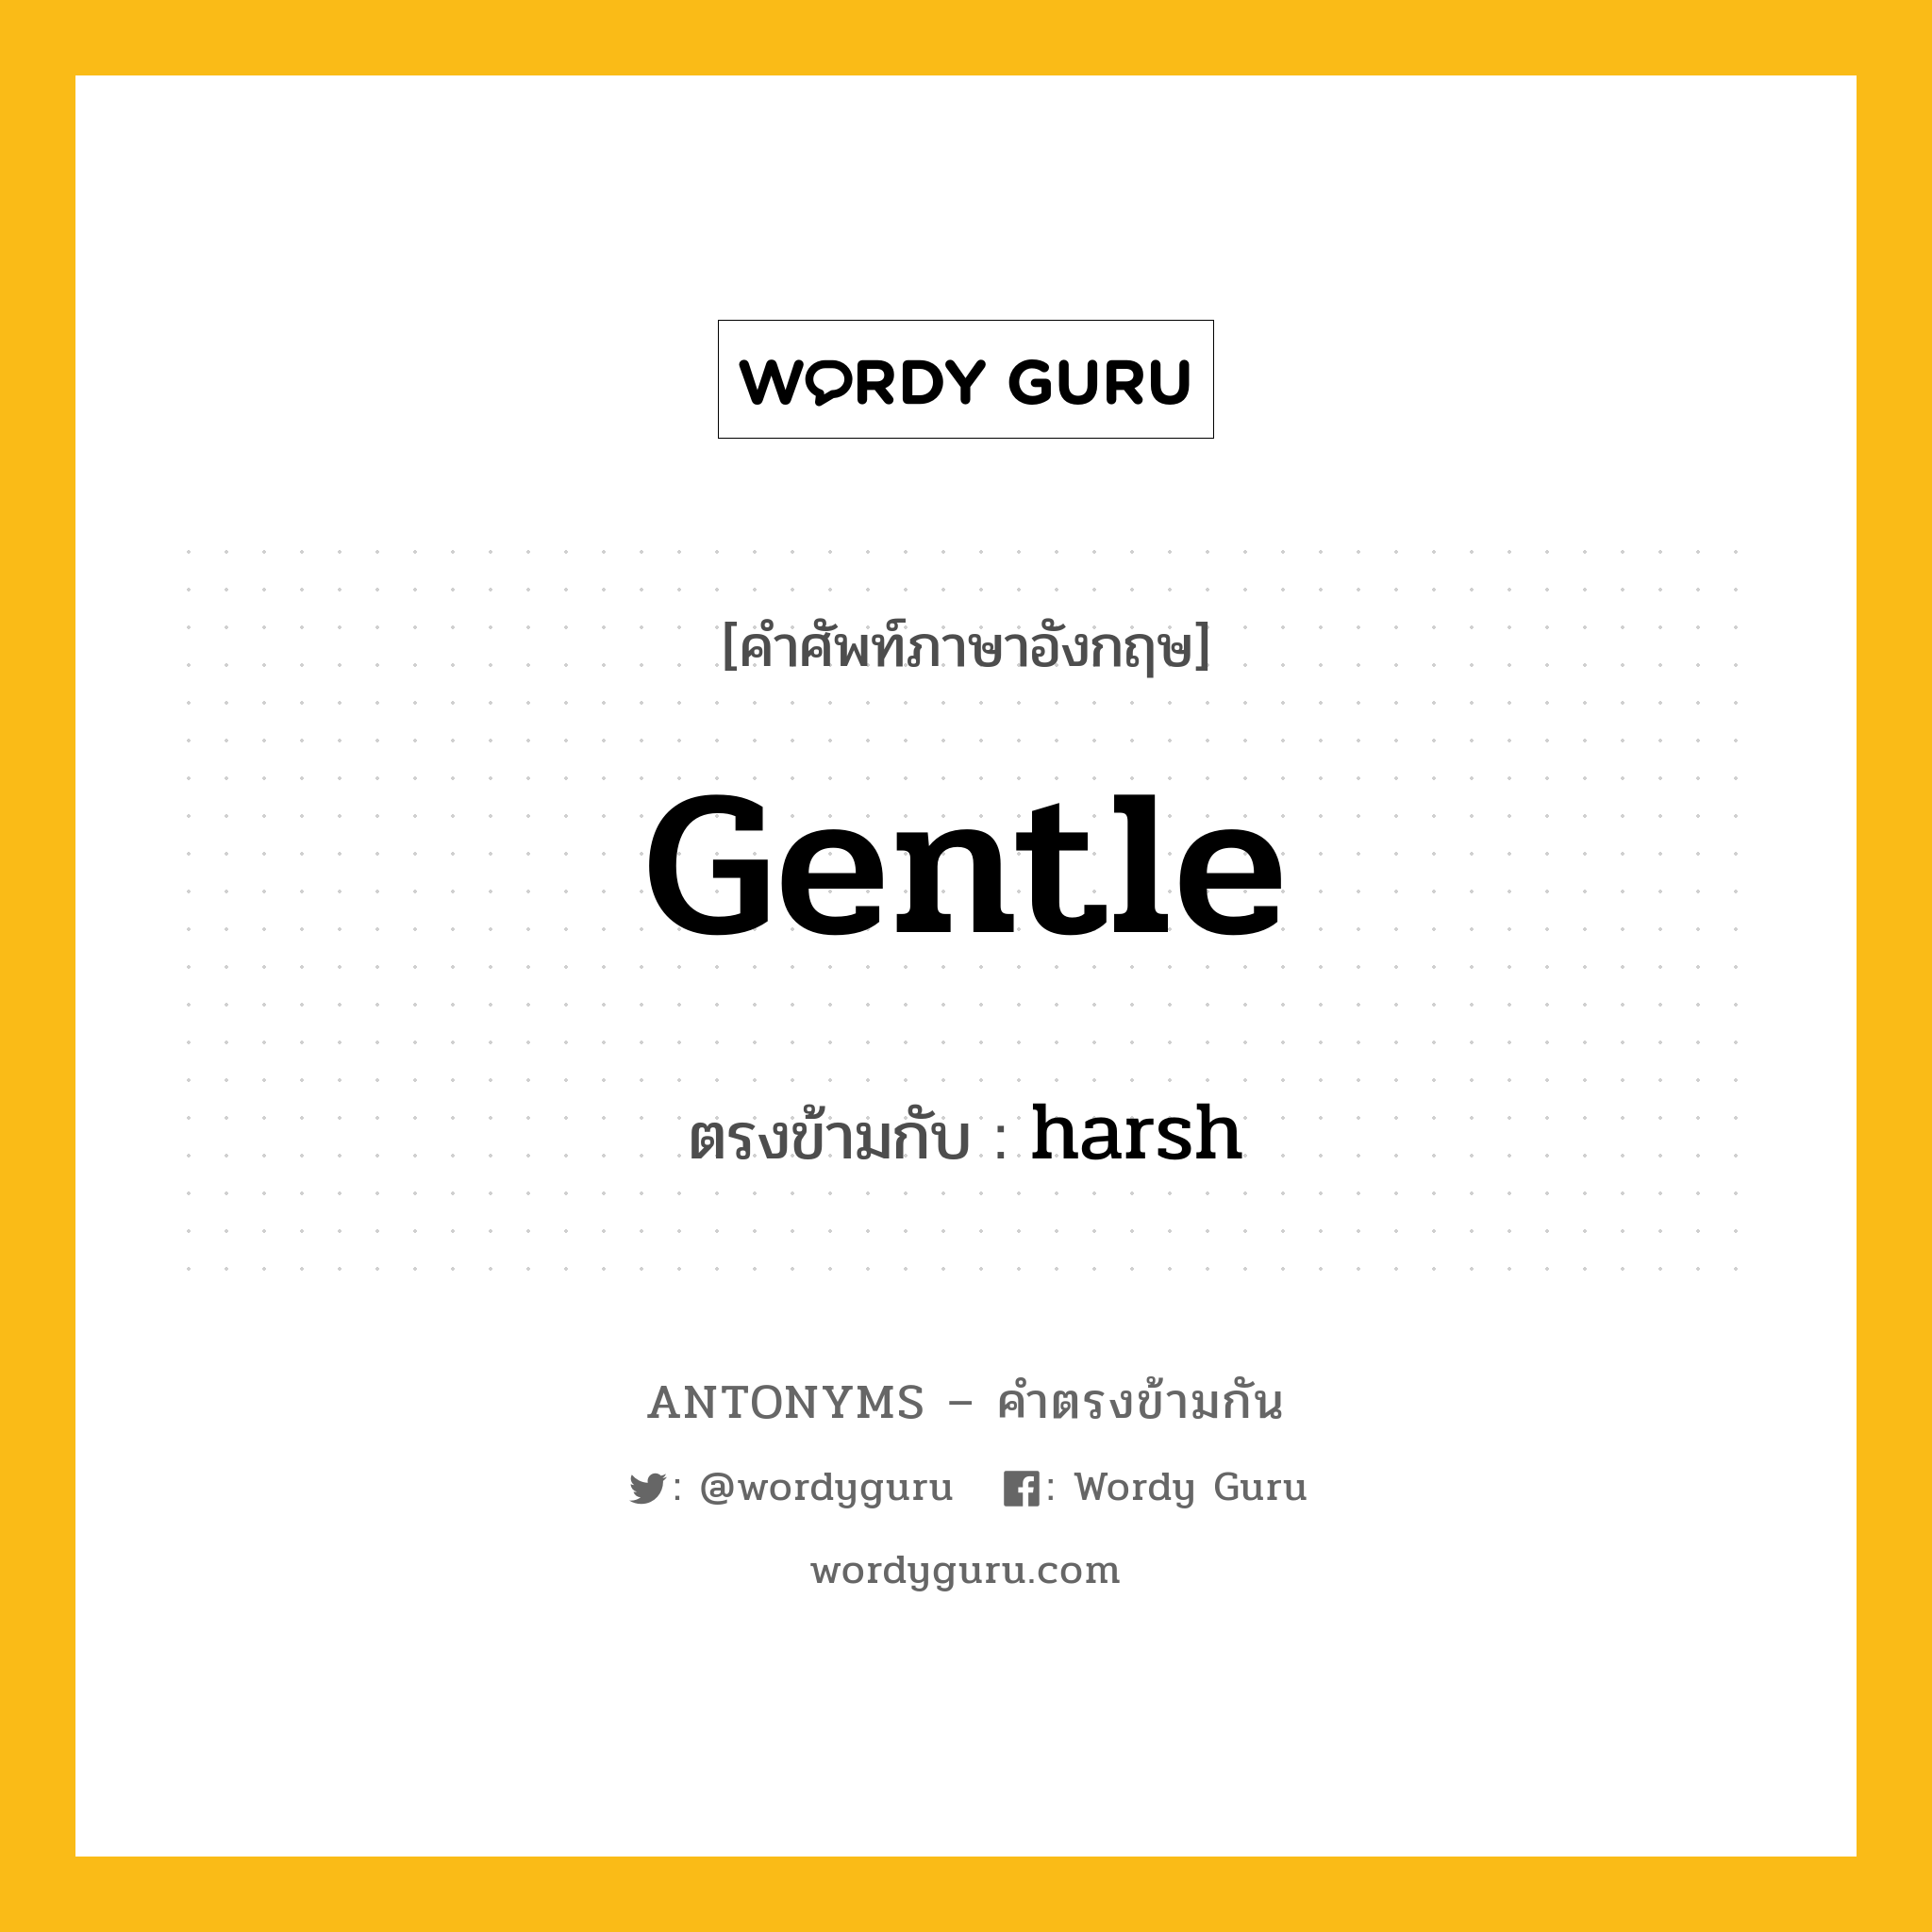 gentle เป็นคำตรงข้ามกับคำไหนบ้าง?, คำศัพท์ภาษาอังกฤษ gentle ตรงข้ามกับ harsh หมวด harsh